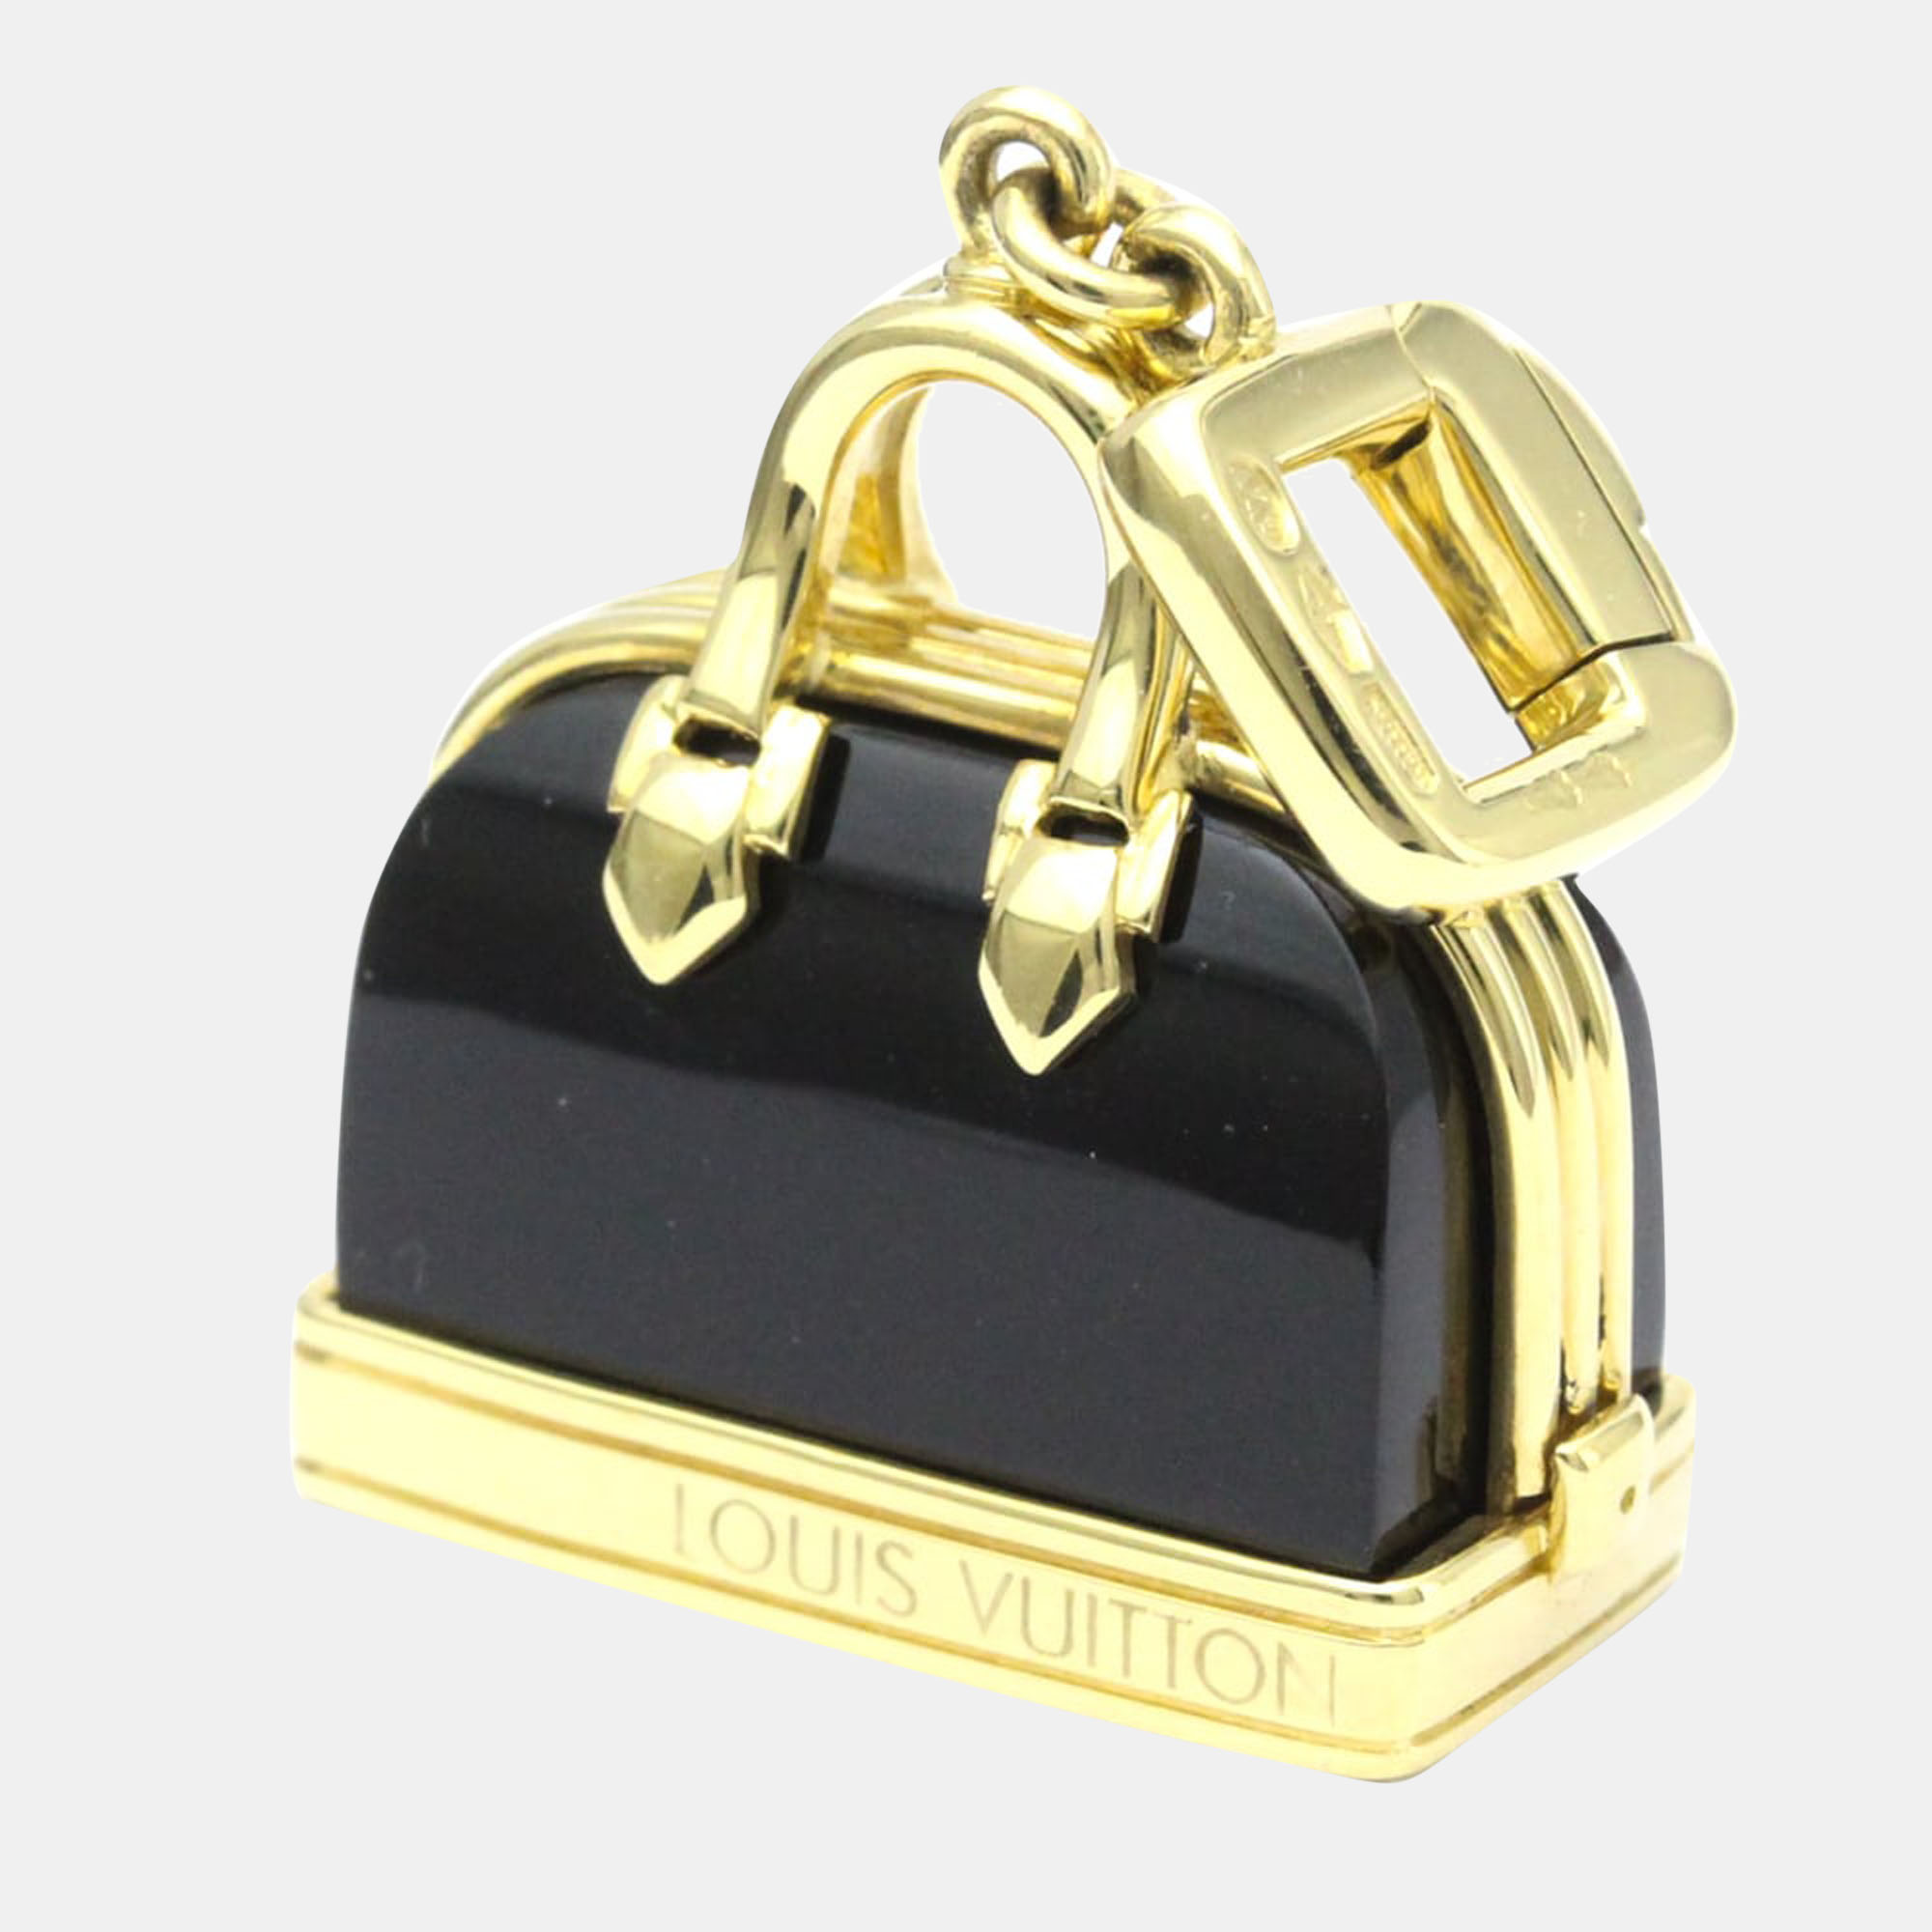 Louis Vuitton 18K Yellow Gold Onyx Alma Charm